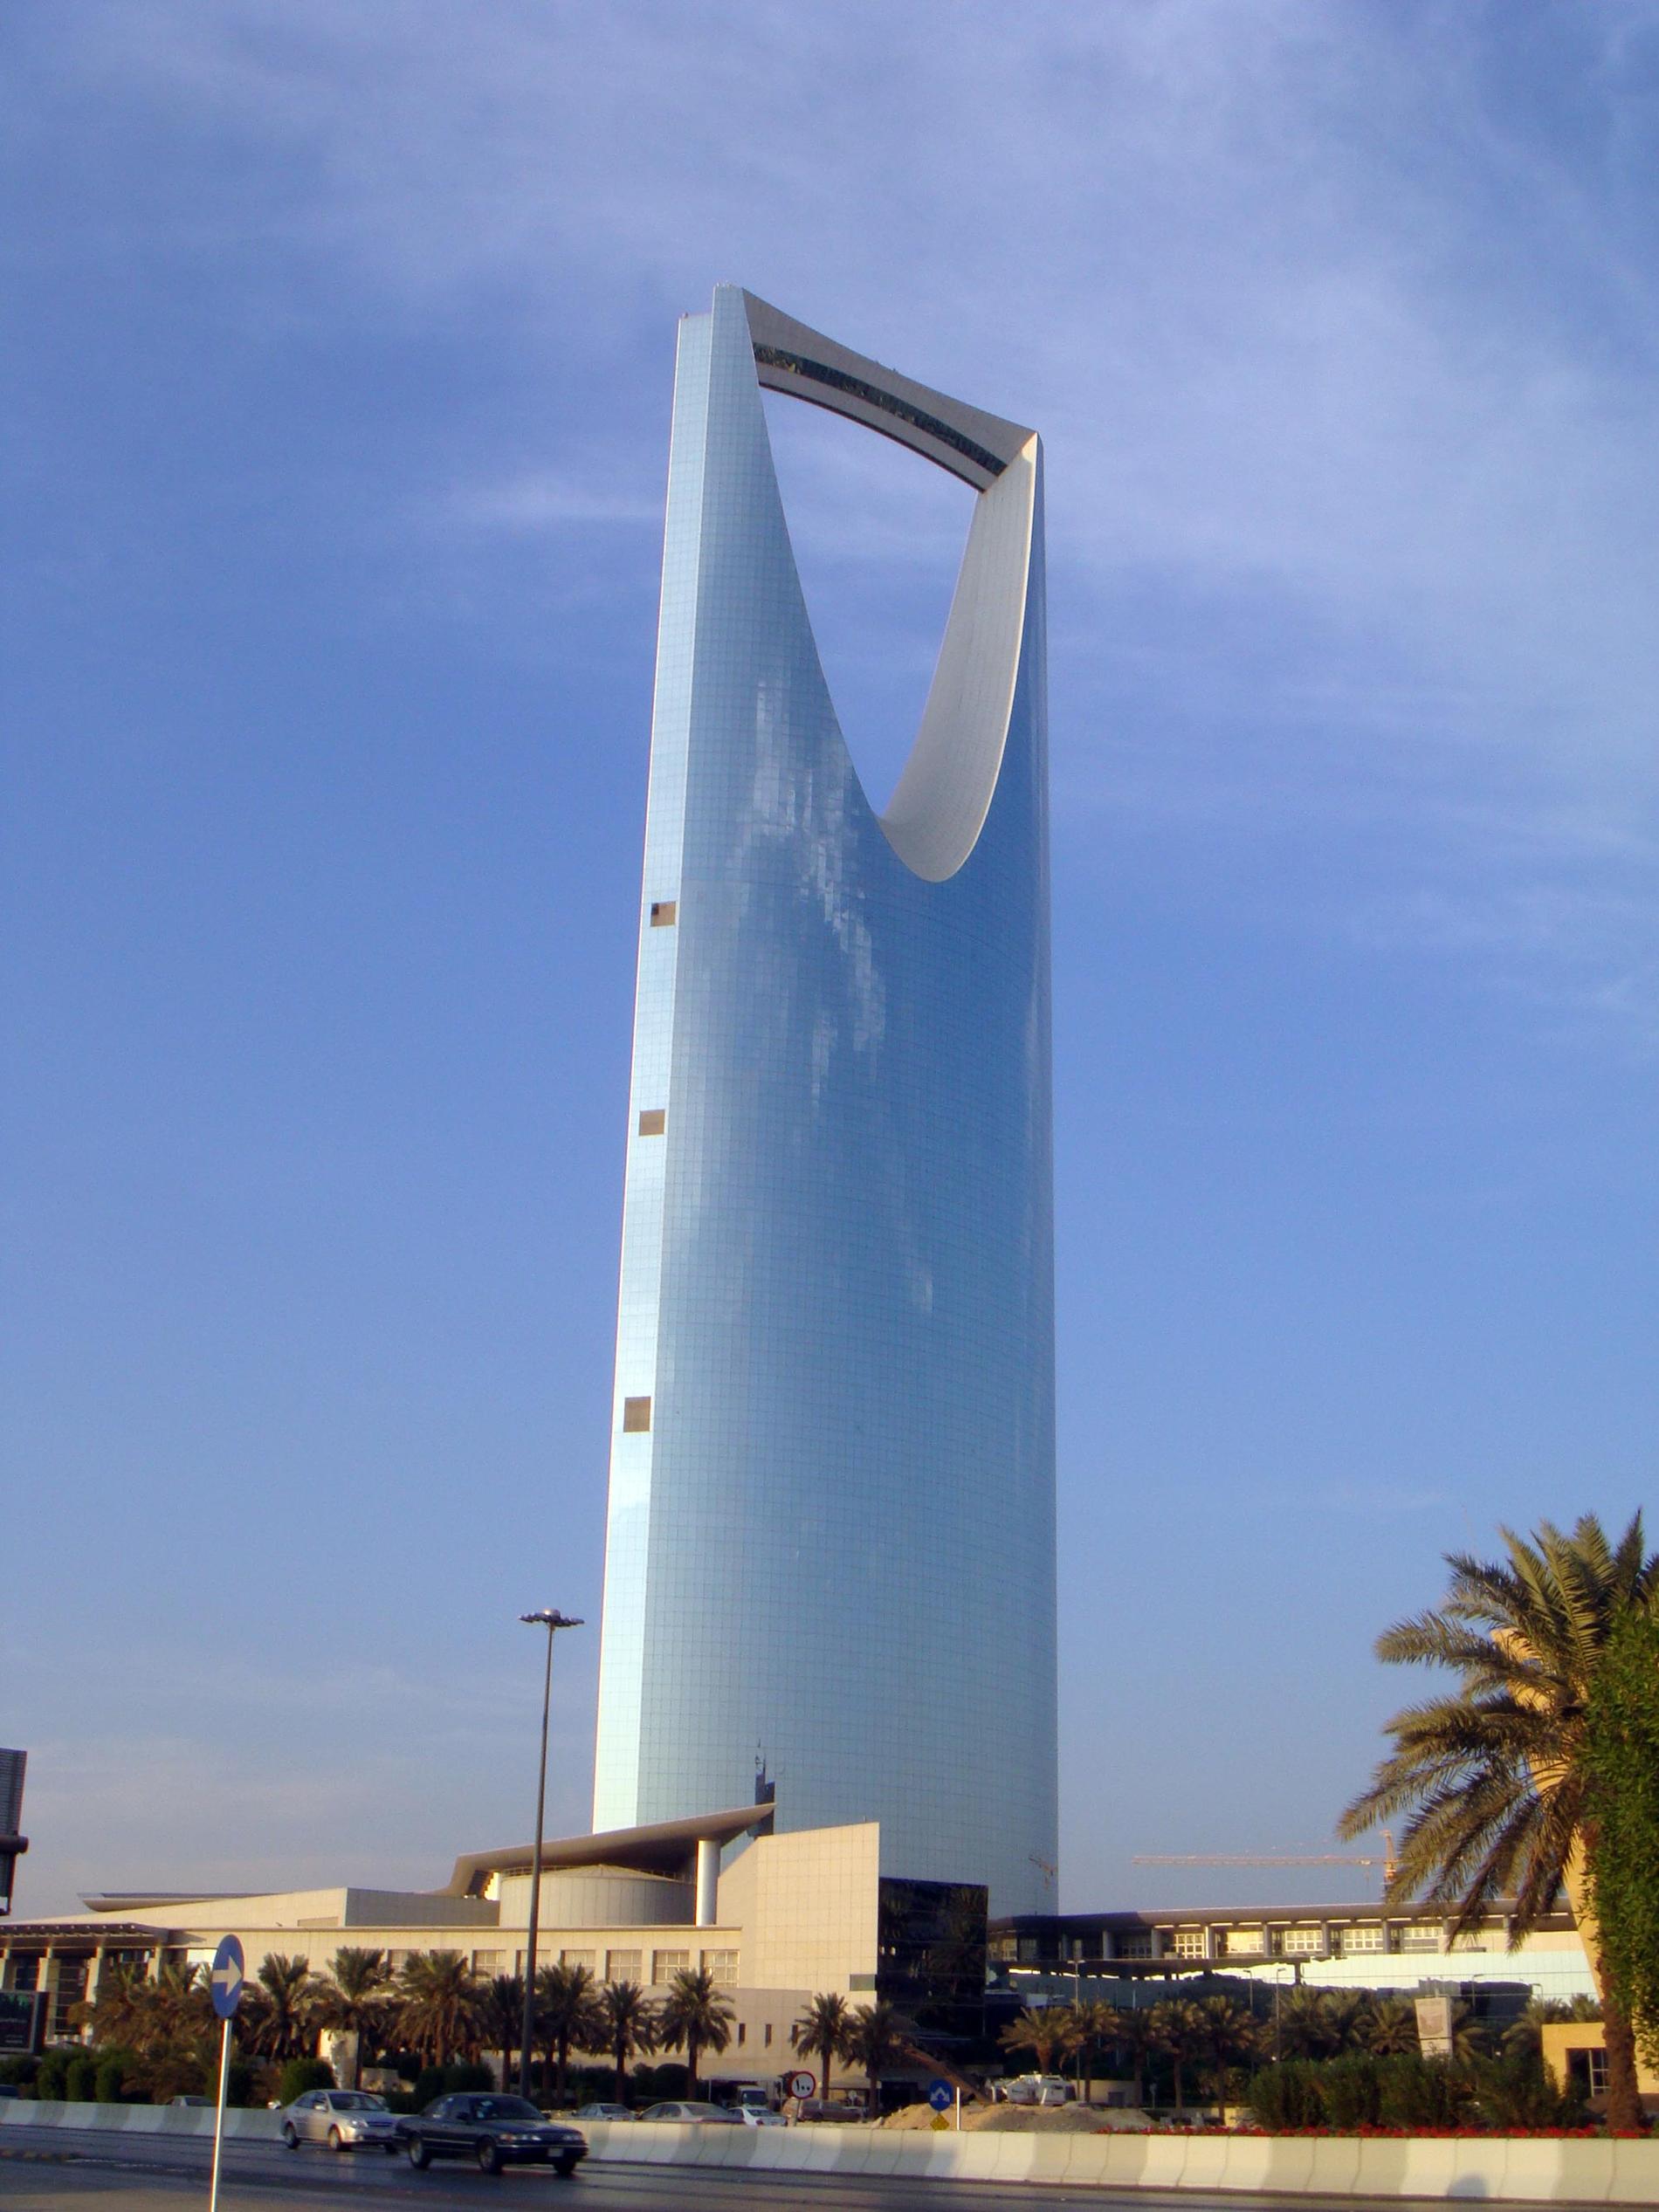 8. KINGDOM CENTER, RIYADH, SAUDIARABIEN Saudiarabiska bygglagar förbjuder byggnader med mer än 30 användbara våningsplan. Kingdom Center, landets högsta byggnad, kringgick lagen genom att ovanpå den 30:e våningen bygga kontruktionen med det stora hålet. På sätt fick man en egen design och lyckades pressa upp totalhöjden till över 300 meter. Höjd: 302 meter. Klar: 2002. Byggkostnad: 3,2 miljarder kronor. Flyg till Saudiarabien - kolla vad det kostar här.